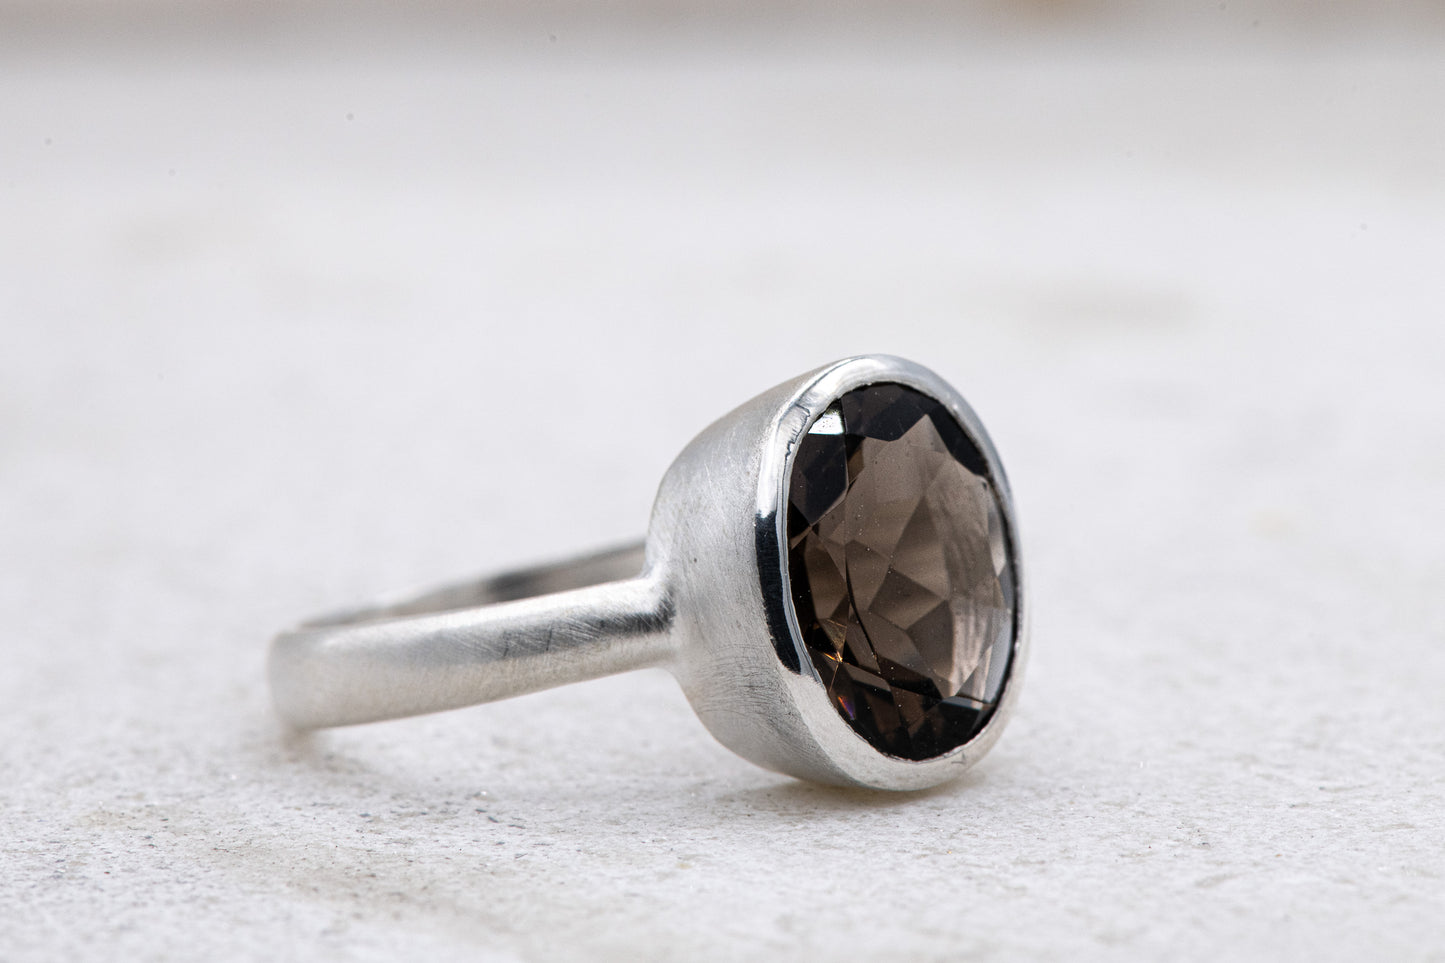 A handmade Solitaire Smoky Quartz Ring featuring a smoky quartz stone from Cassin Jewelry.